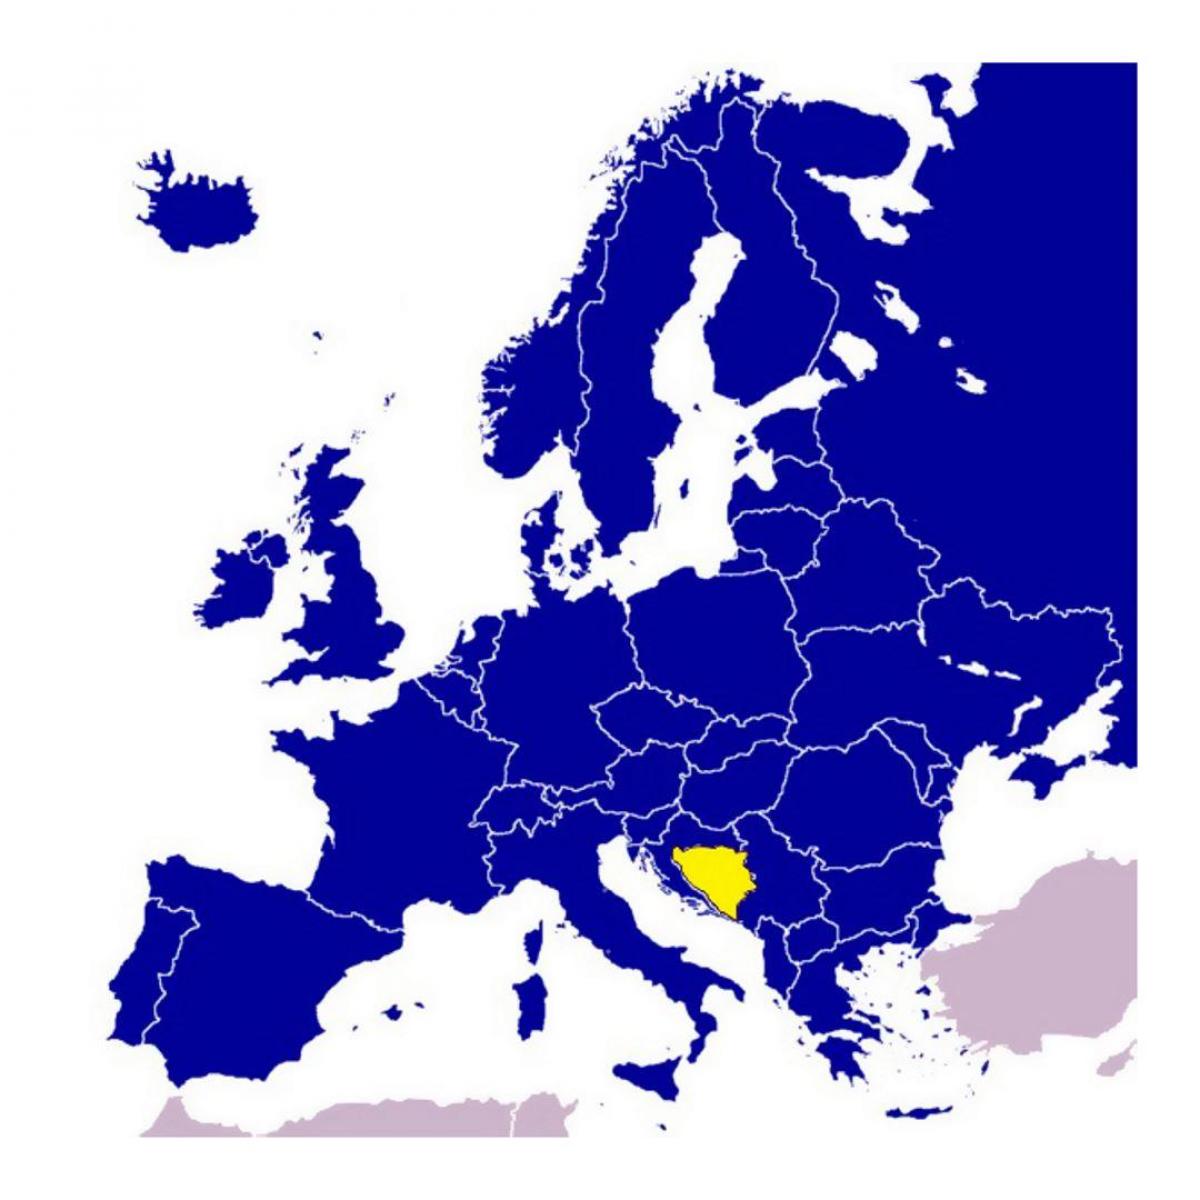 قفي بدلًا من ذلك محطة تلفاز توهج  البوسنة والهرسك خريطة أوروبا - خريطة البوسنة والهرسك أوروبا (جنوب أوروبا -  أوروبا)